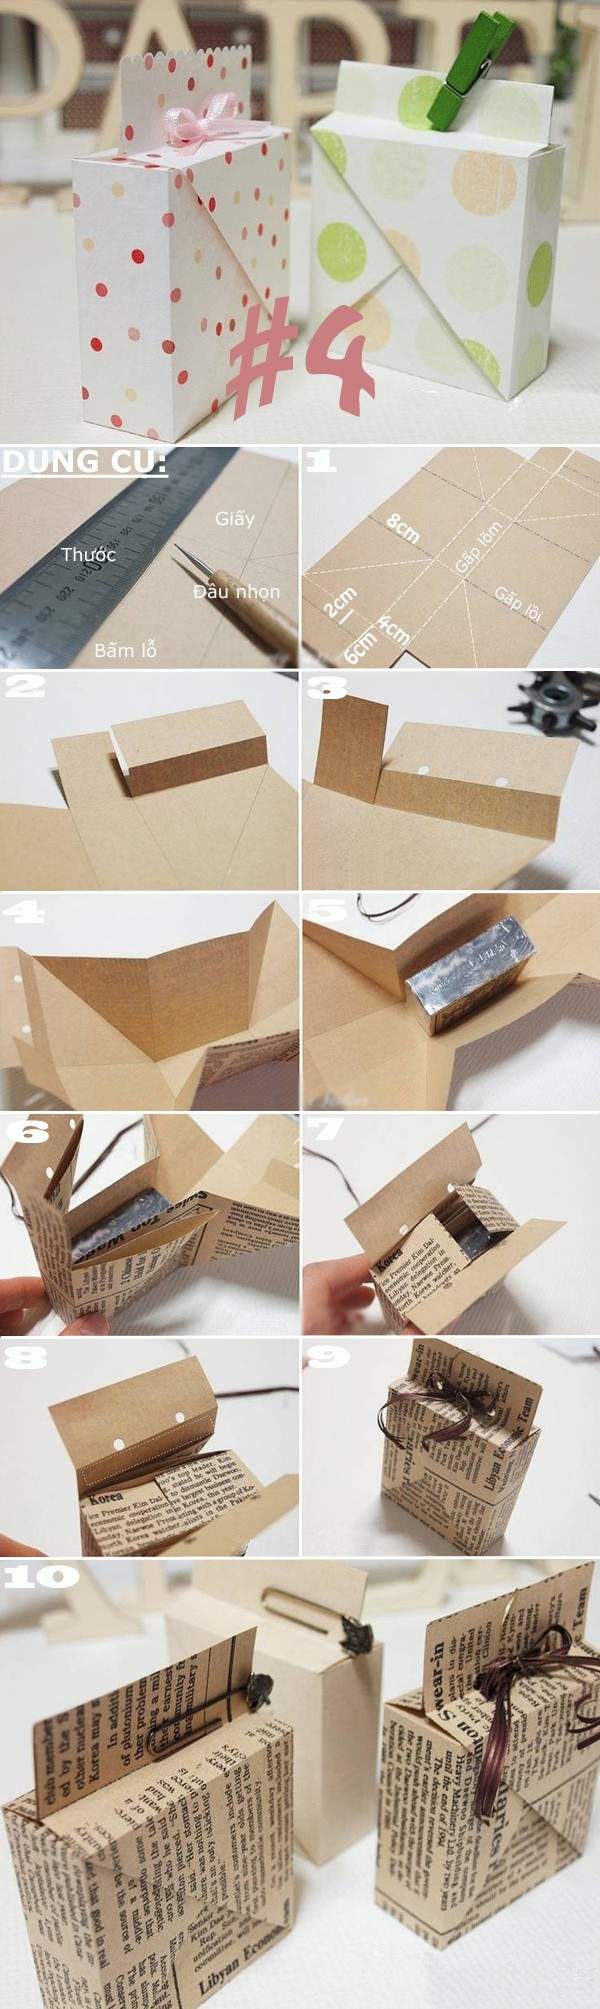 Gấp giấy thành đủ kiểu hộp đựng đồ hữu ích 4